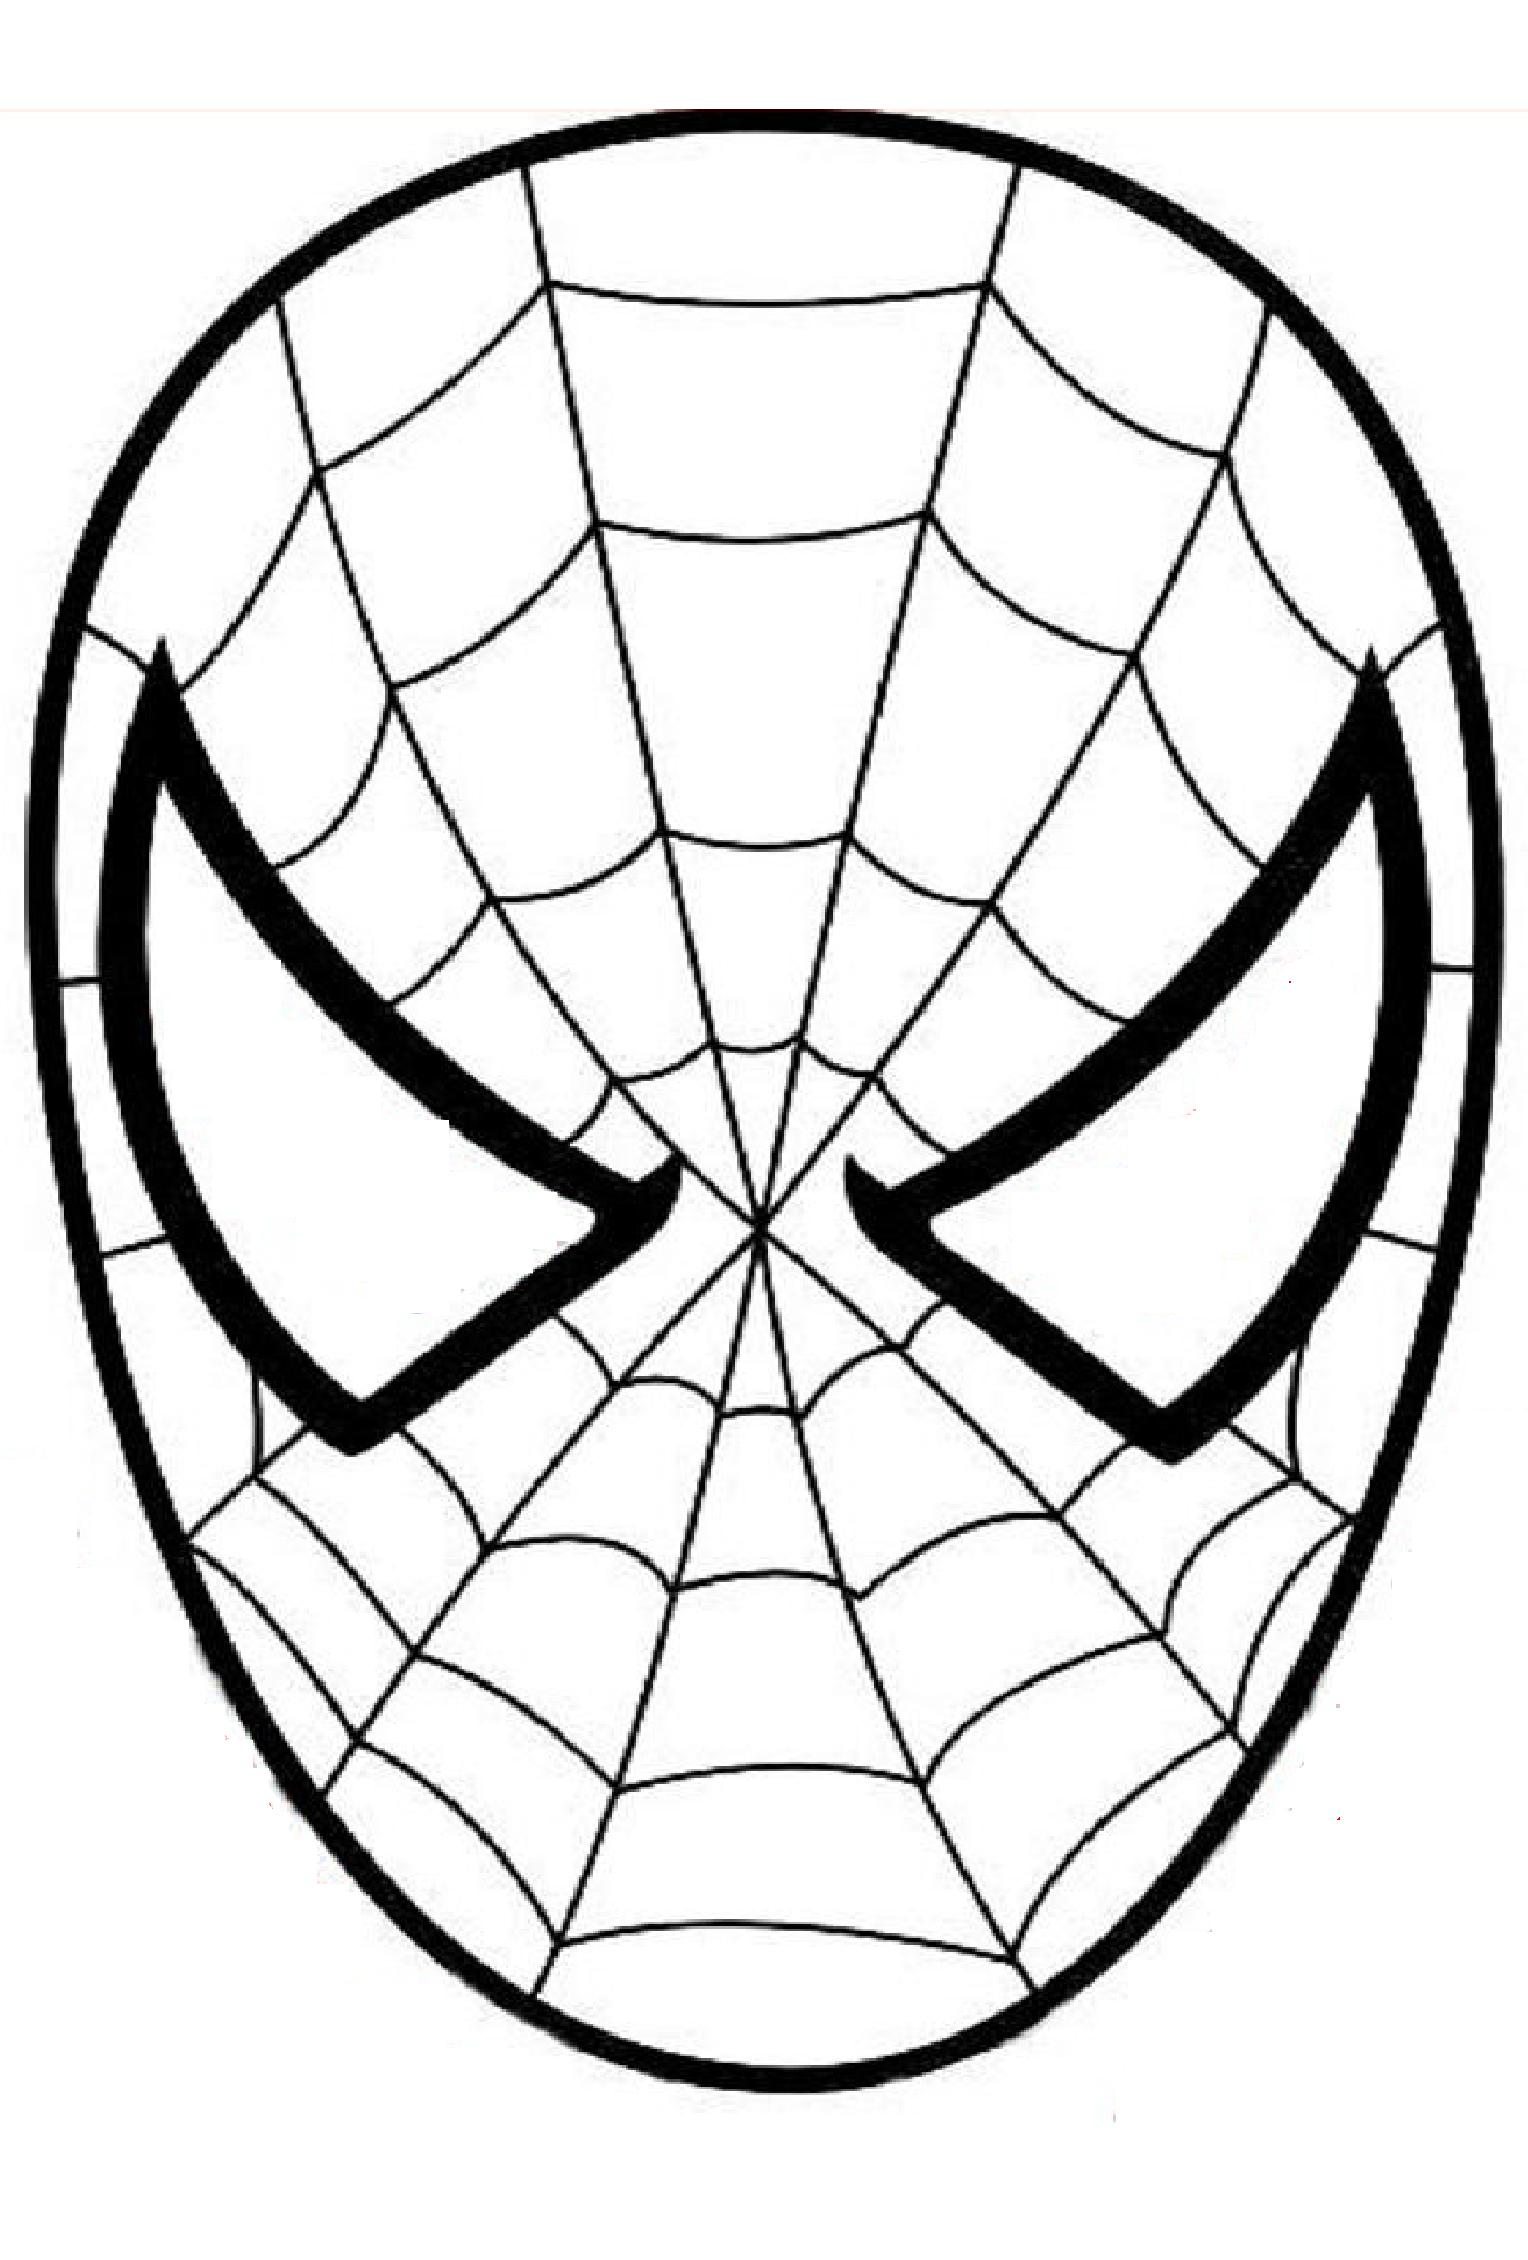 Uma máscara do Homem-Aranha para imprimir, decorar e colorir